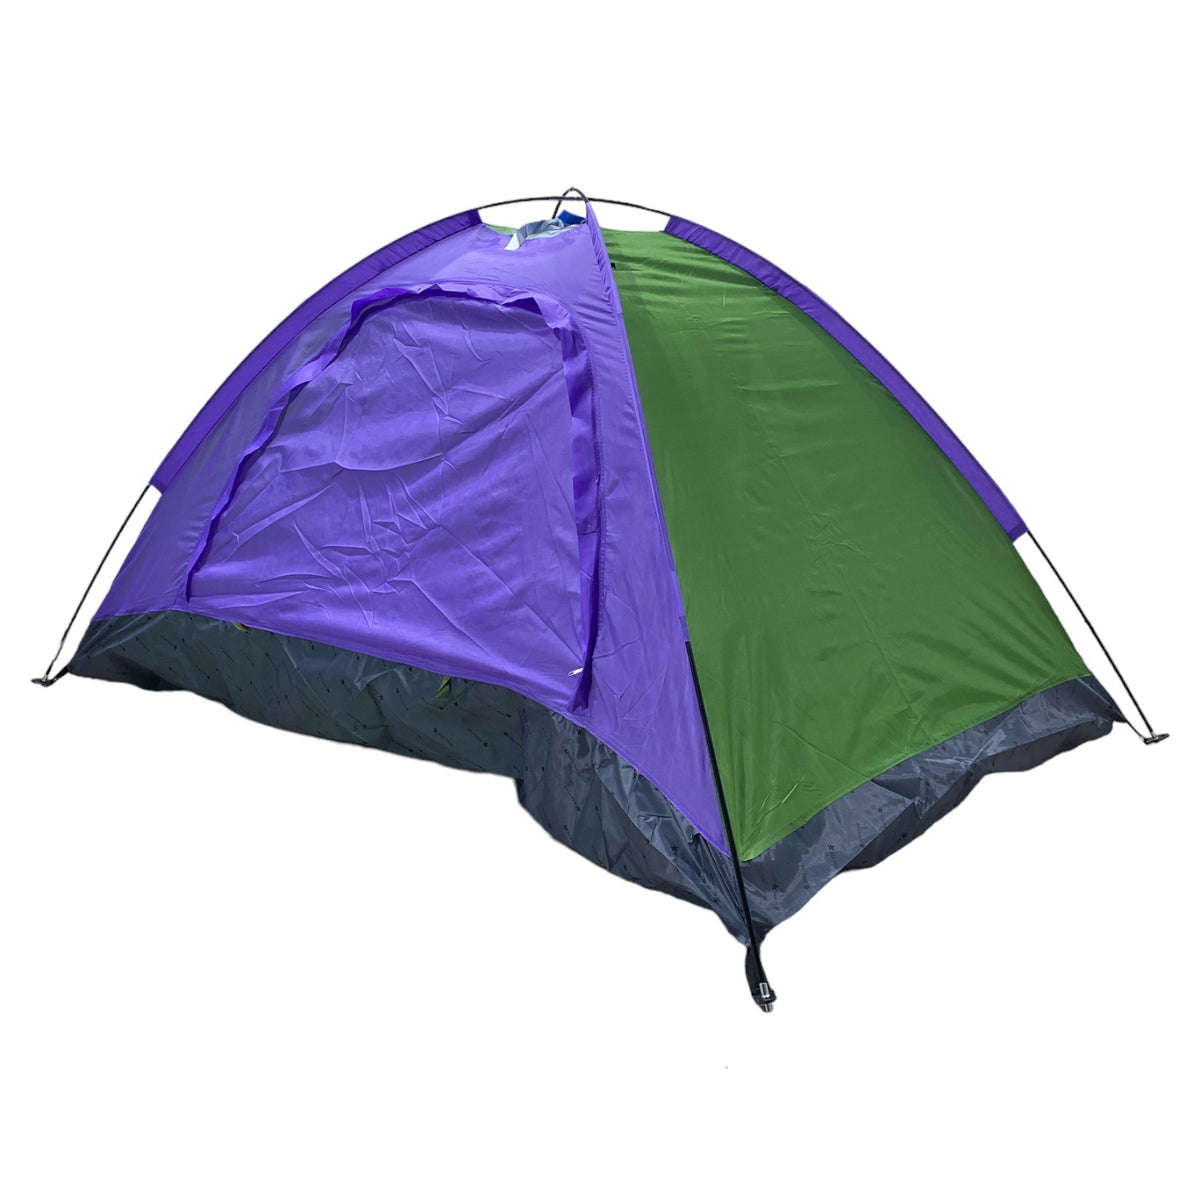 Carpa Camping para 2 personas 1X2mt VTR-341